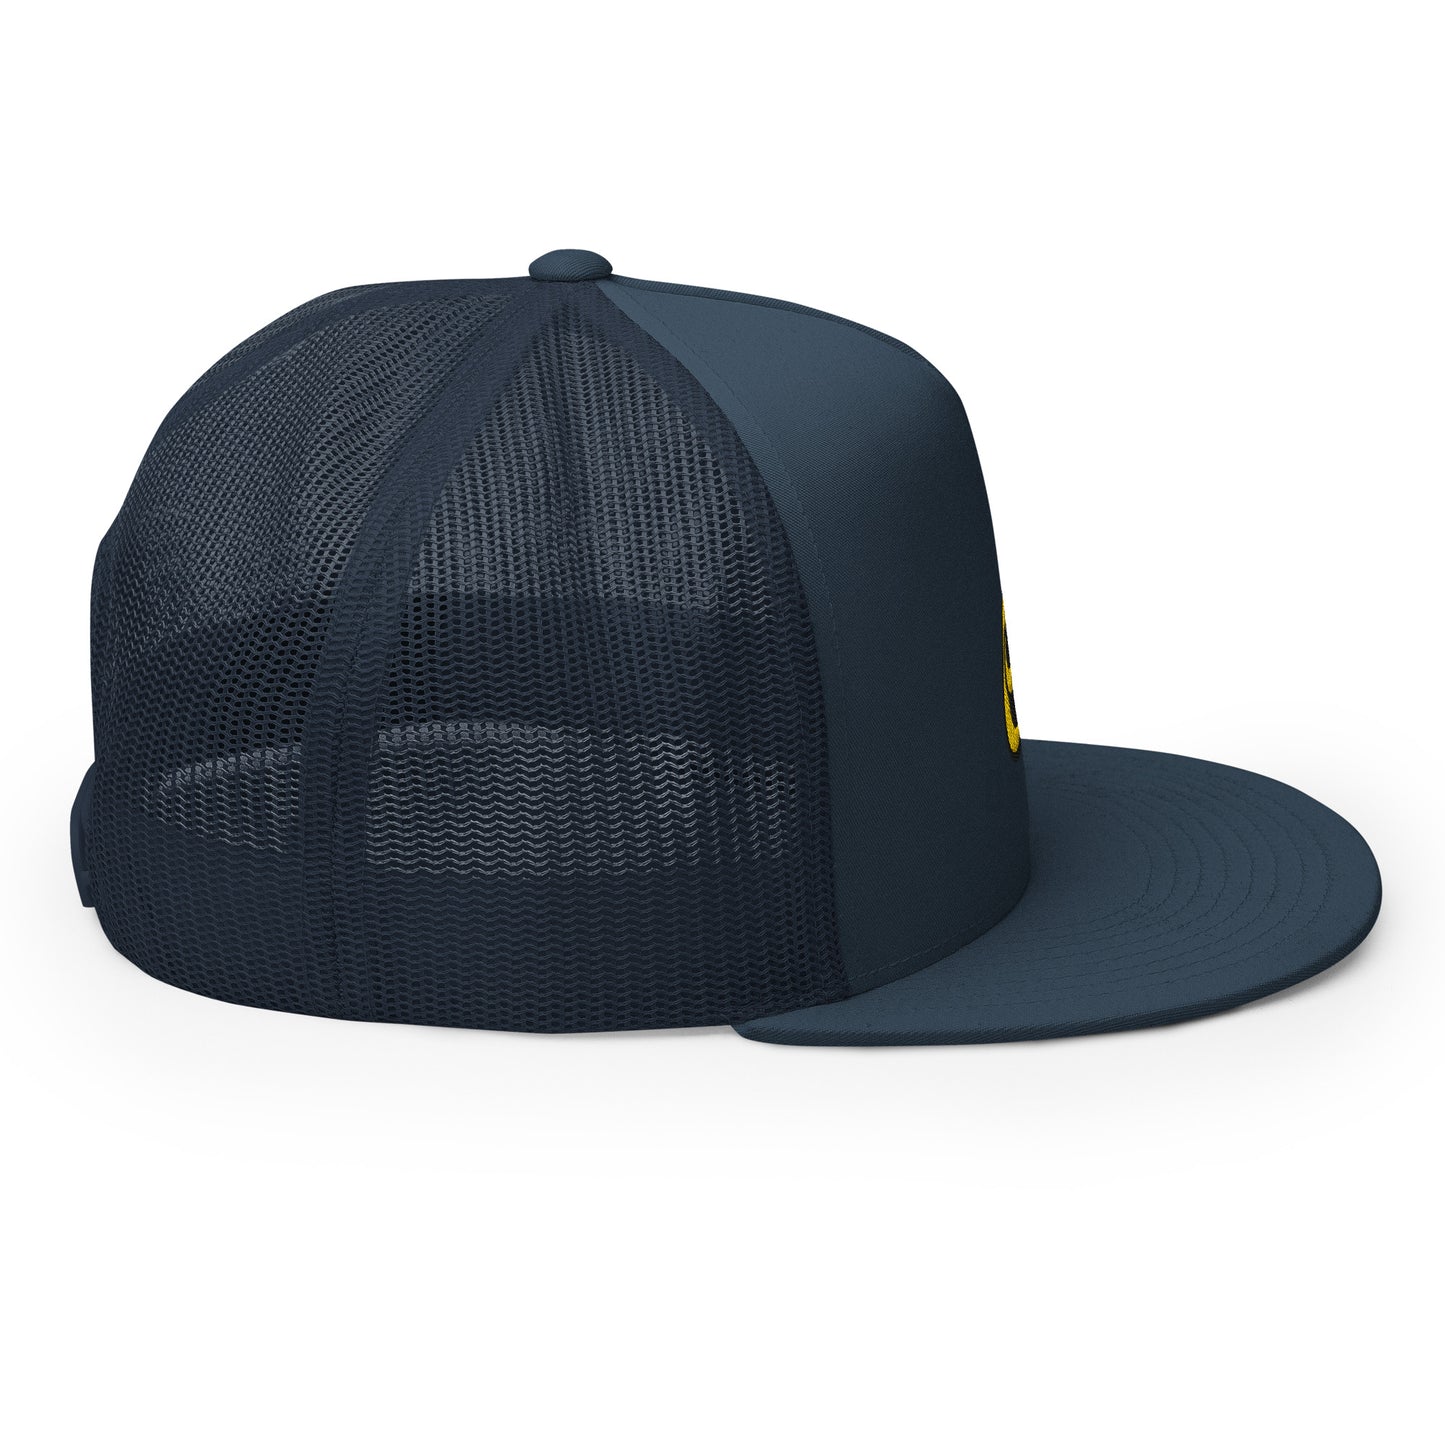 Binhi "Navy" Trucker hat